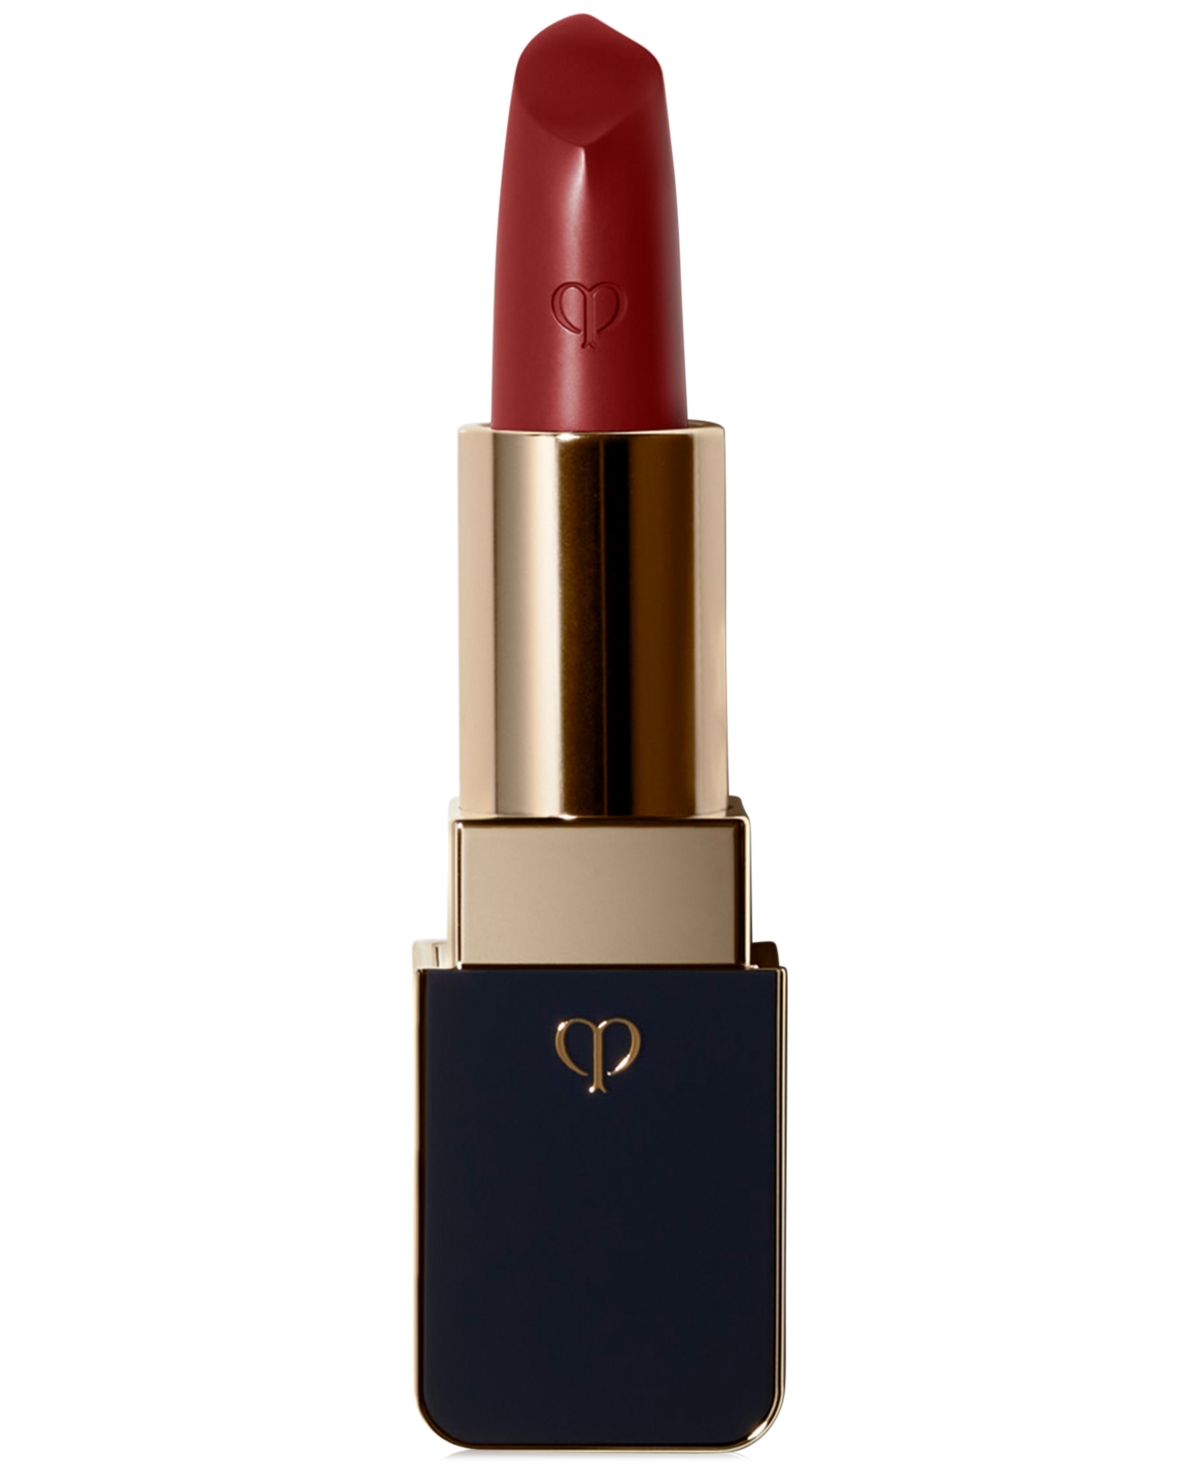 Clé De Peau Beauté Cle De Peau Beaute Lipstick In - Refined Red